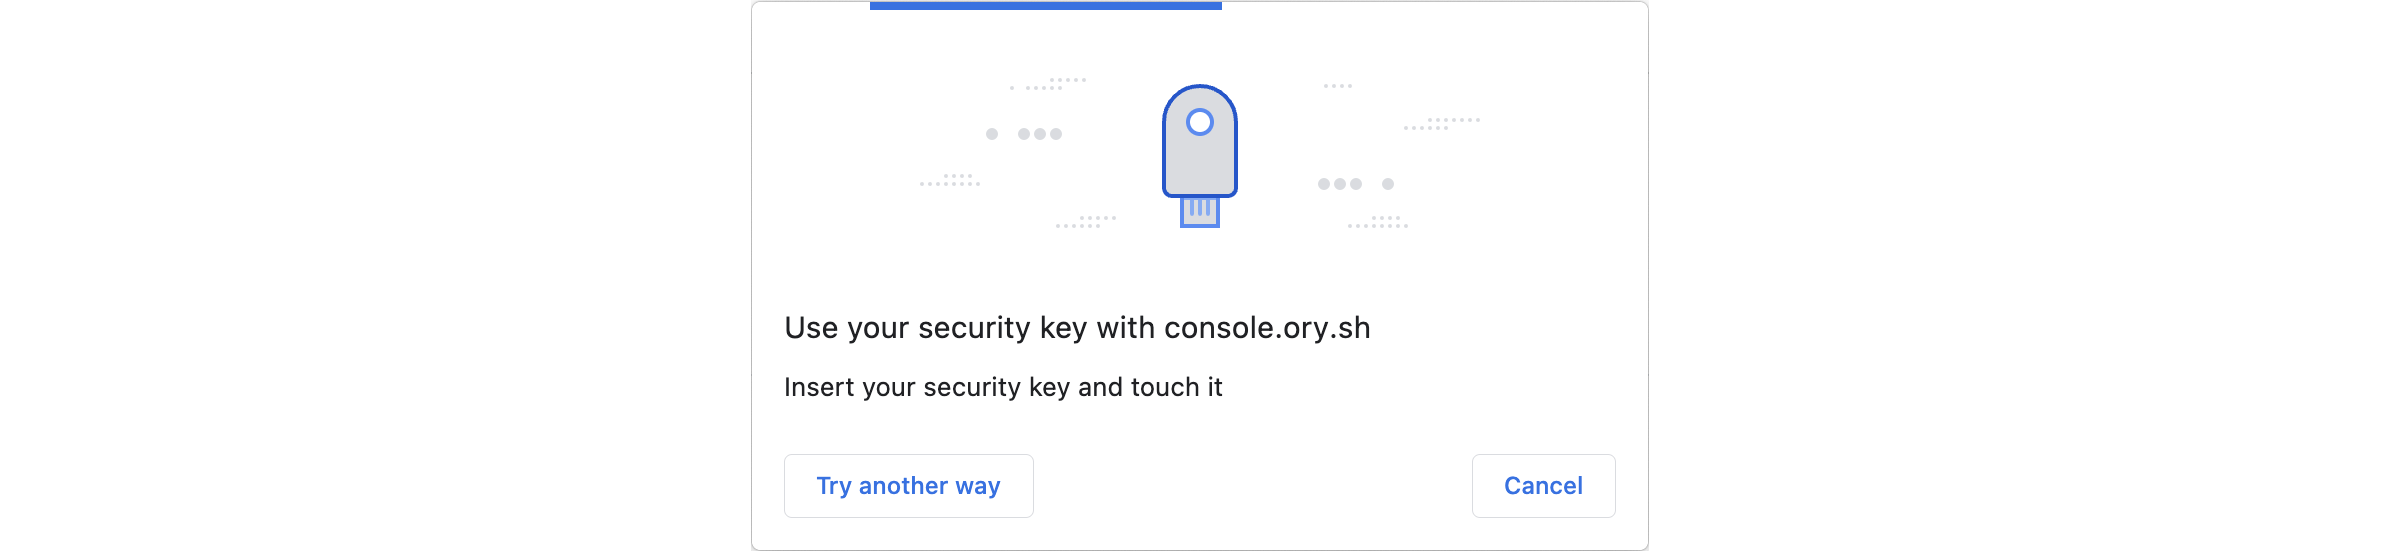 Verify identity with USB security key